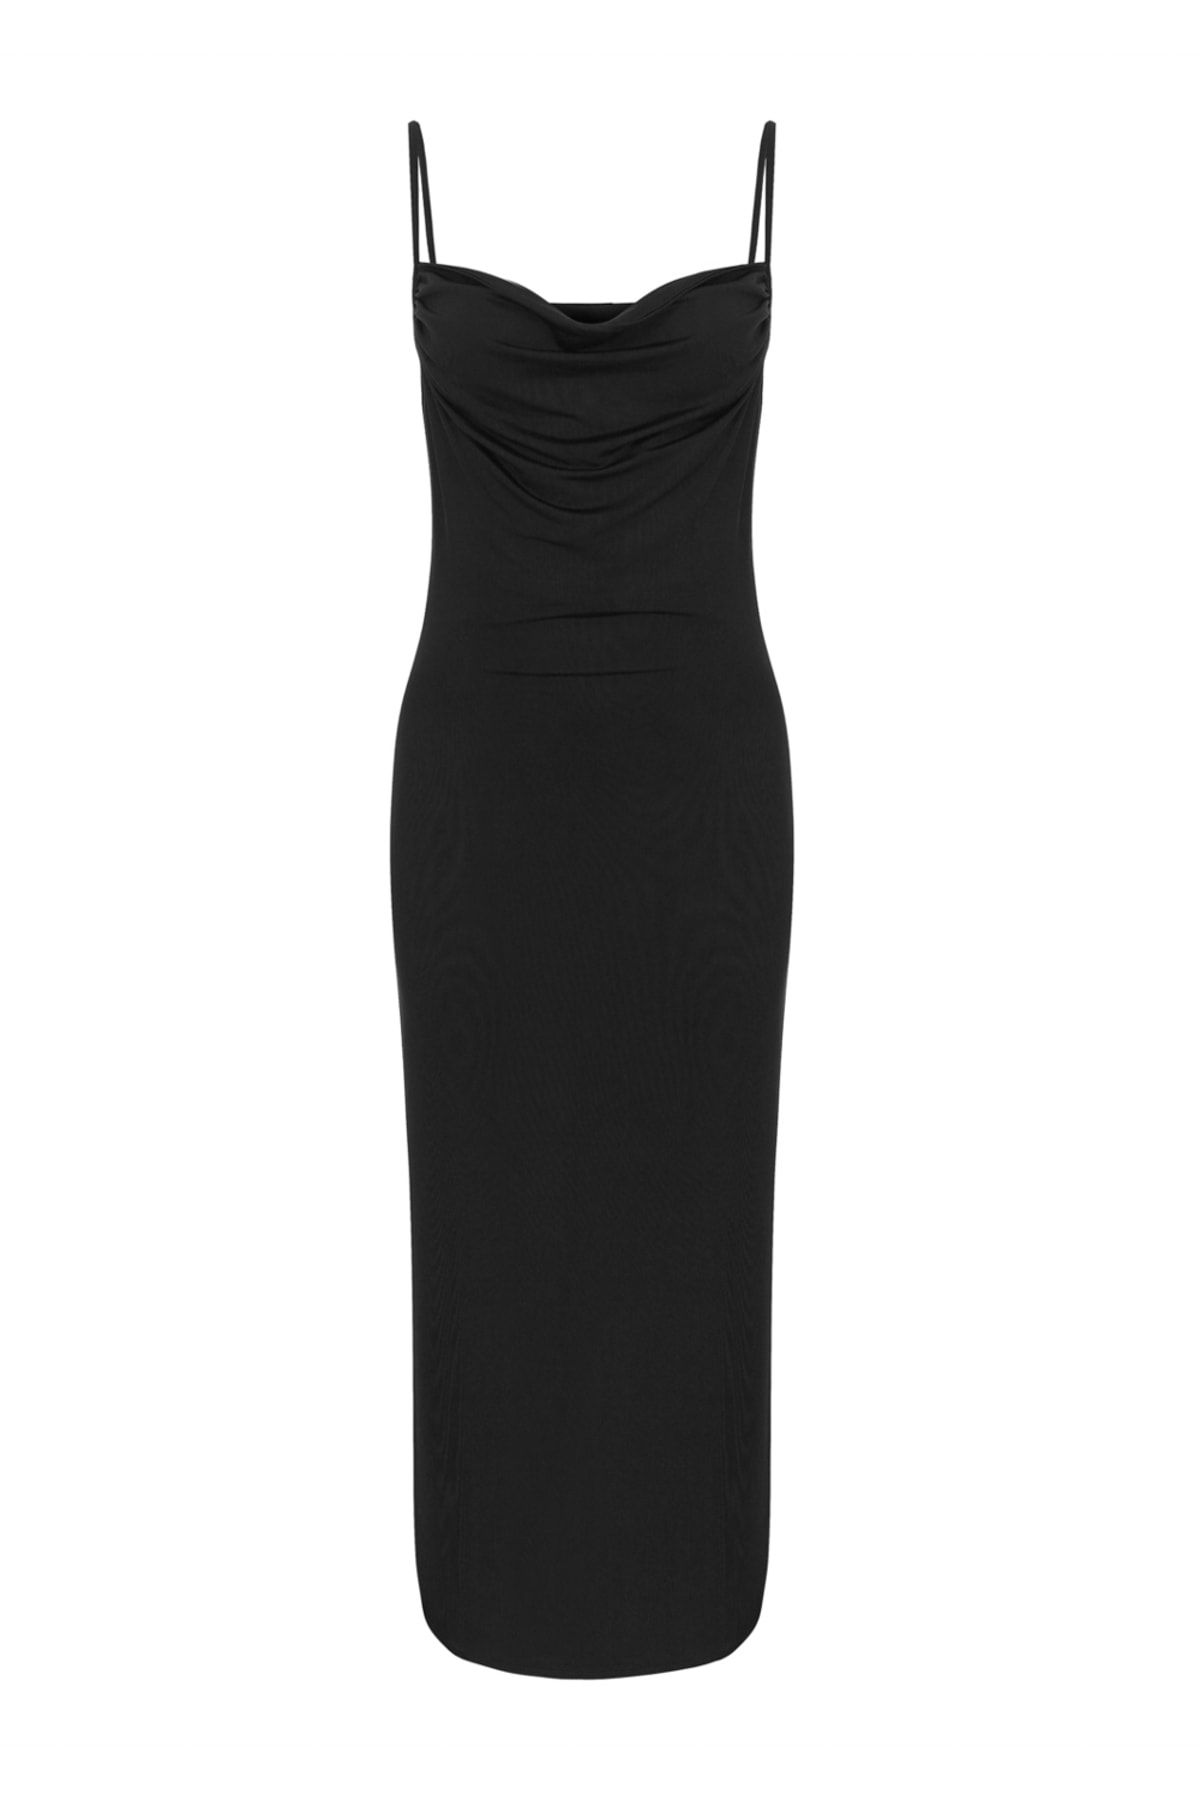 Mudo Kadın Siyah Elbise 373020